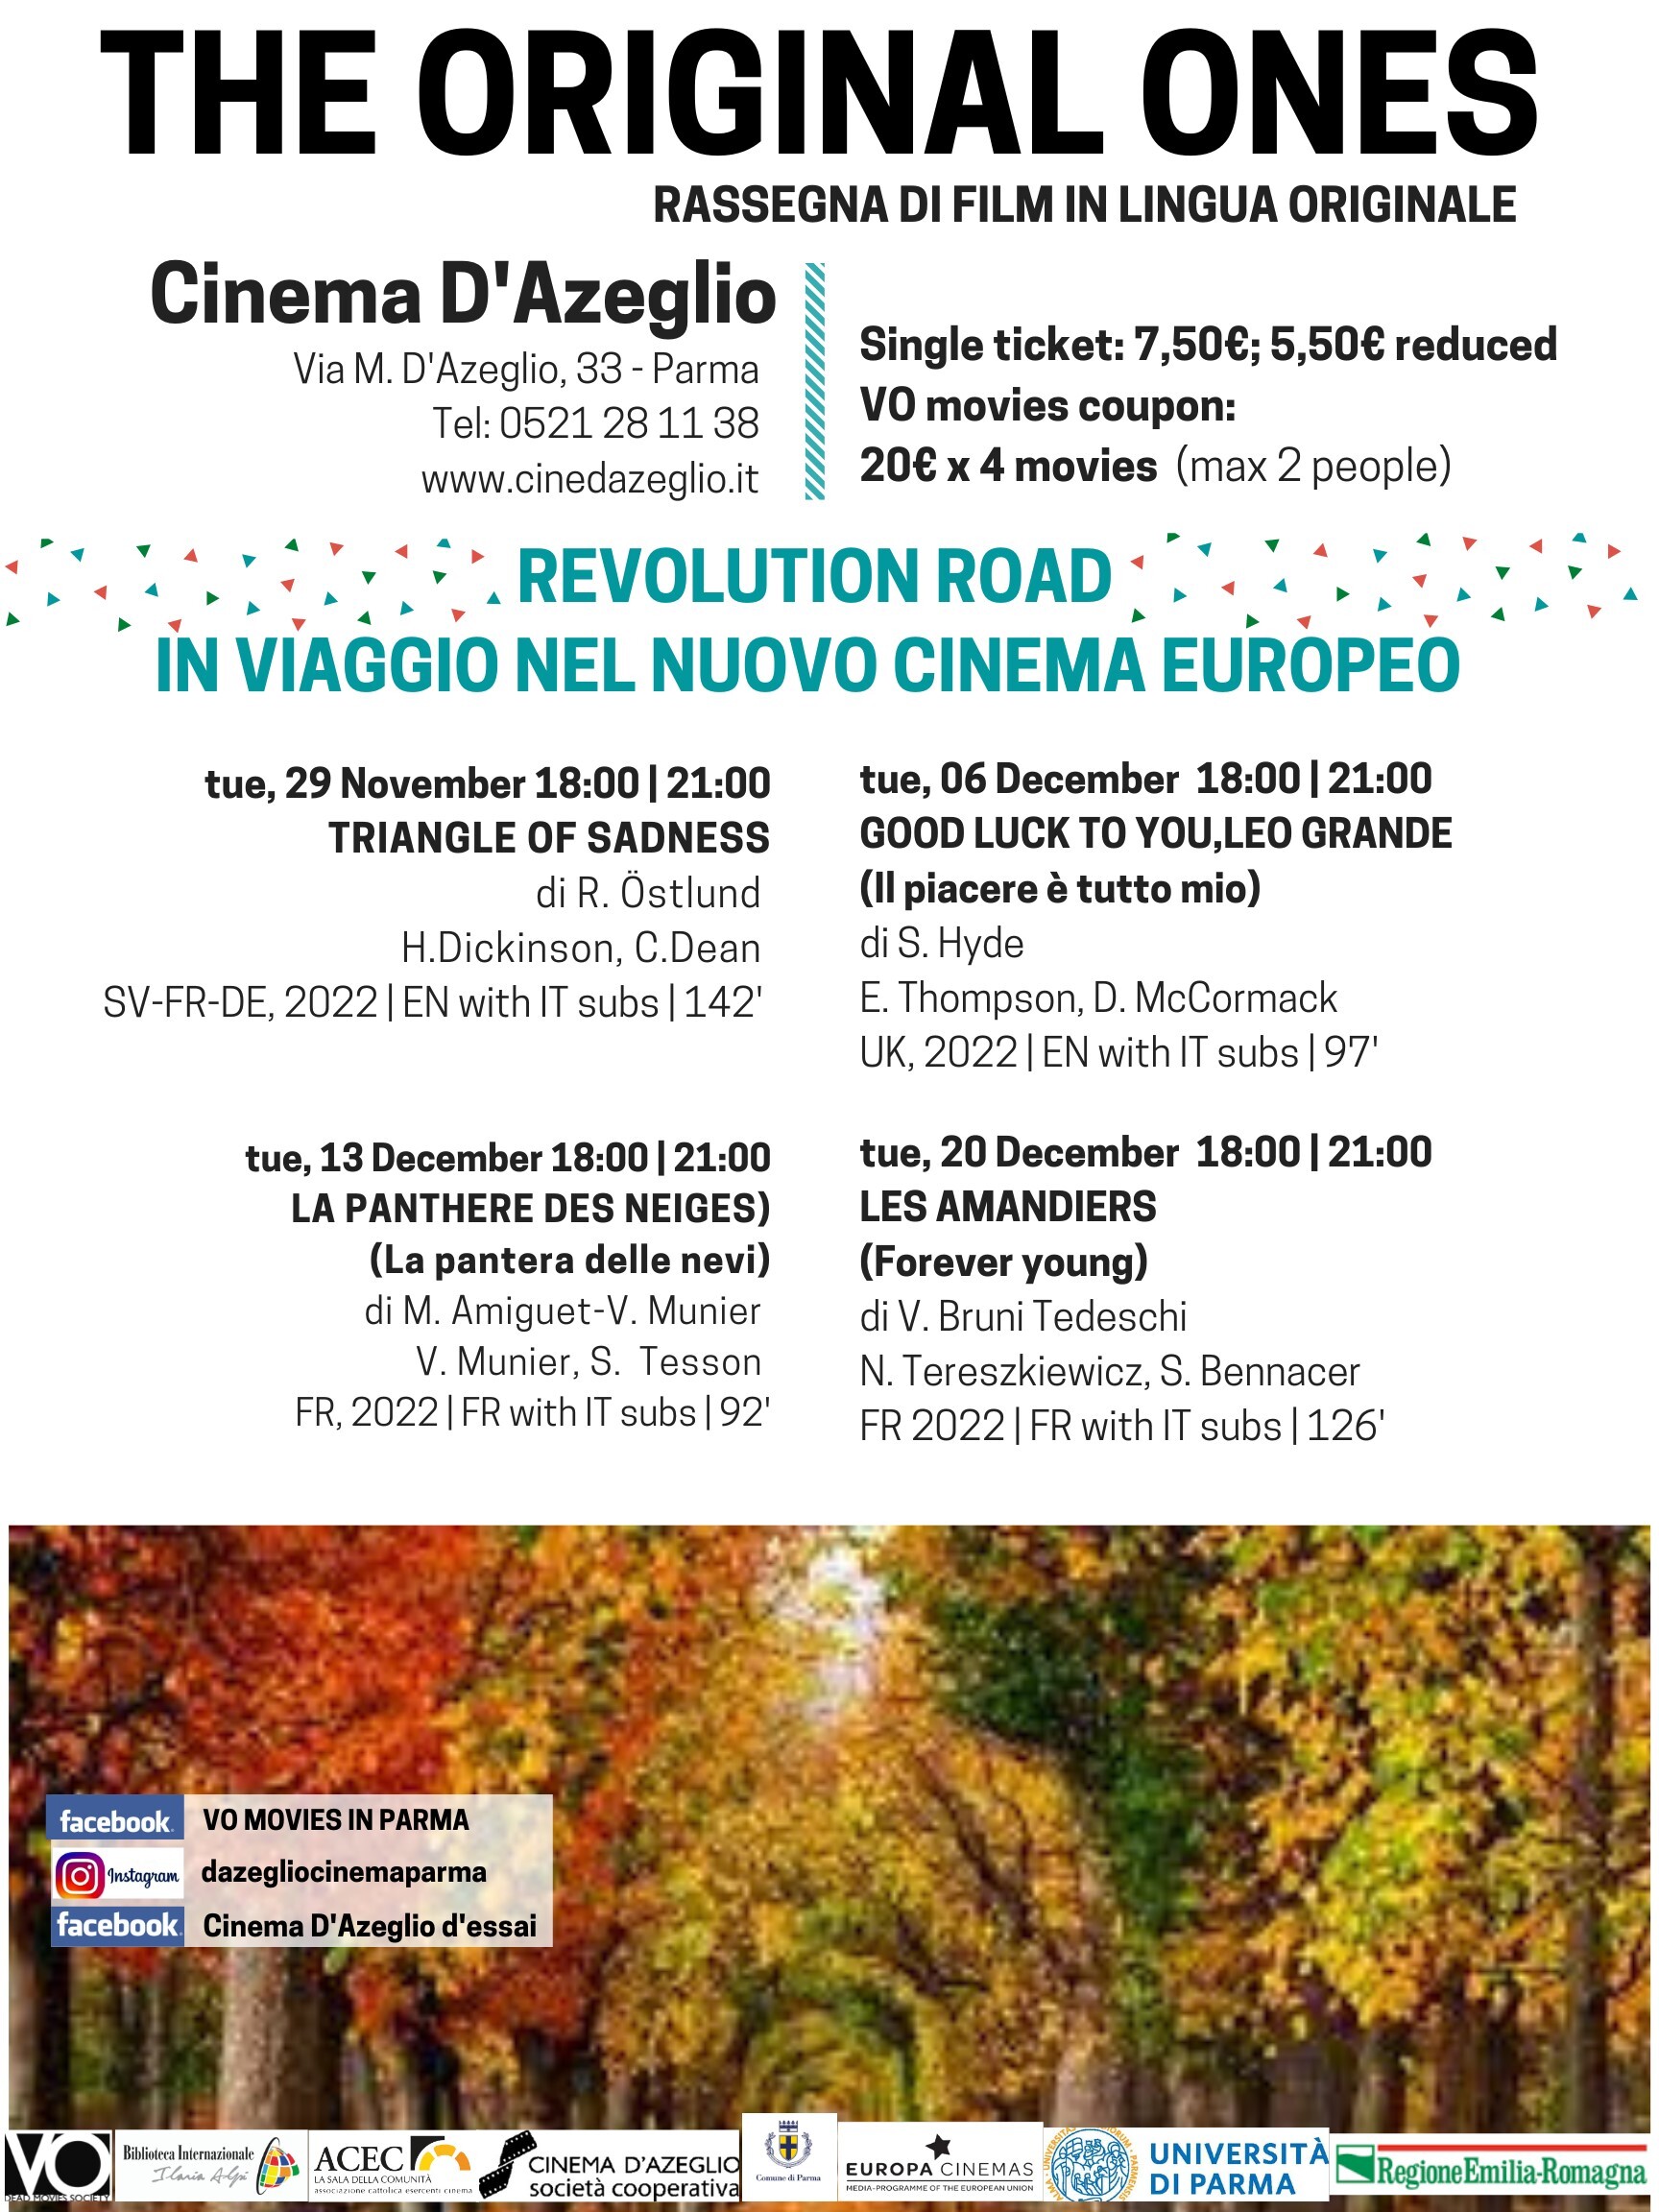 The Original Ones "Revolution road in viaggio nel nuovo cinema europe" al cinema D'Azeglio di Parma